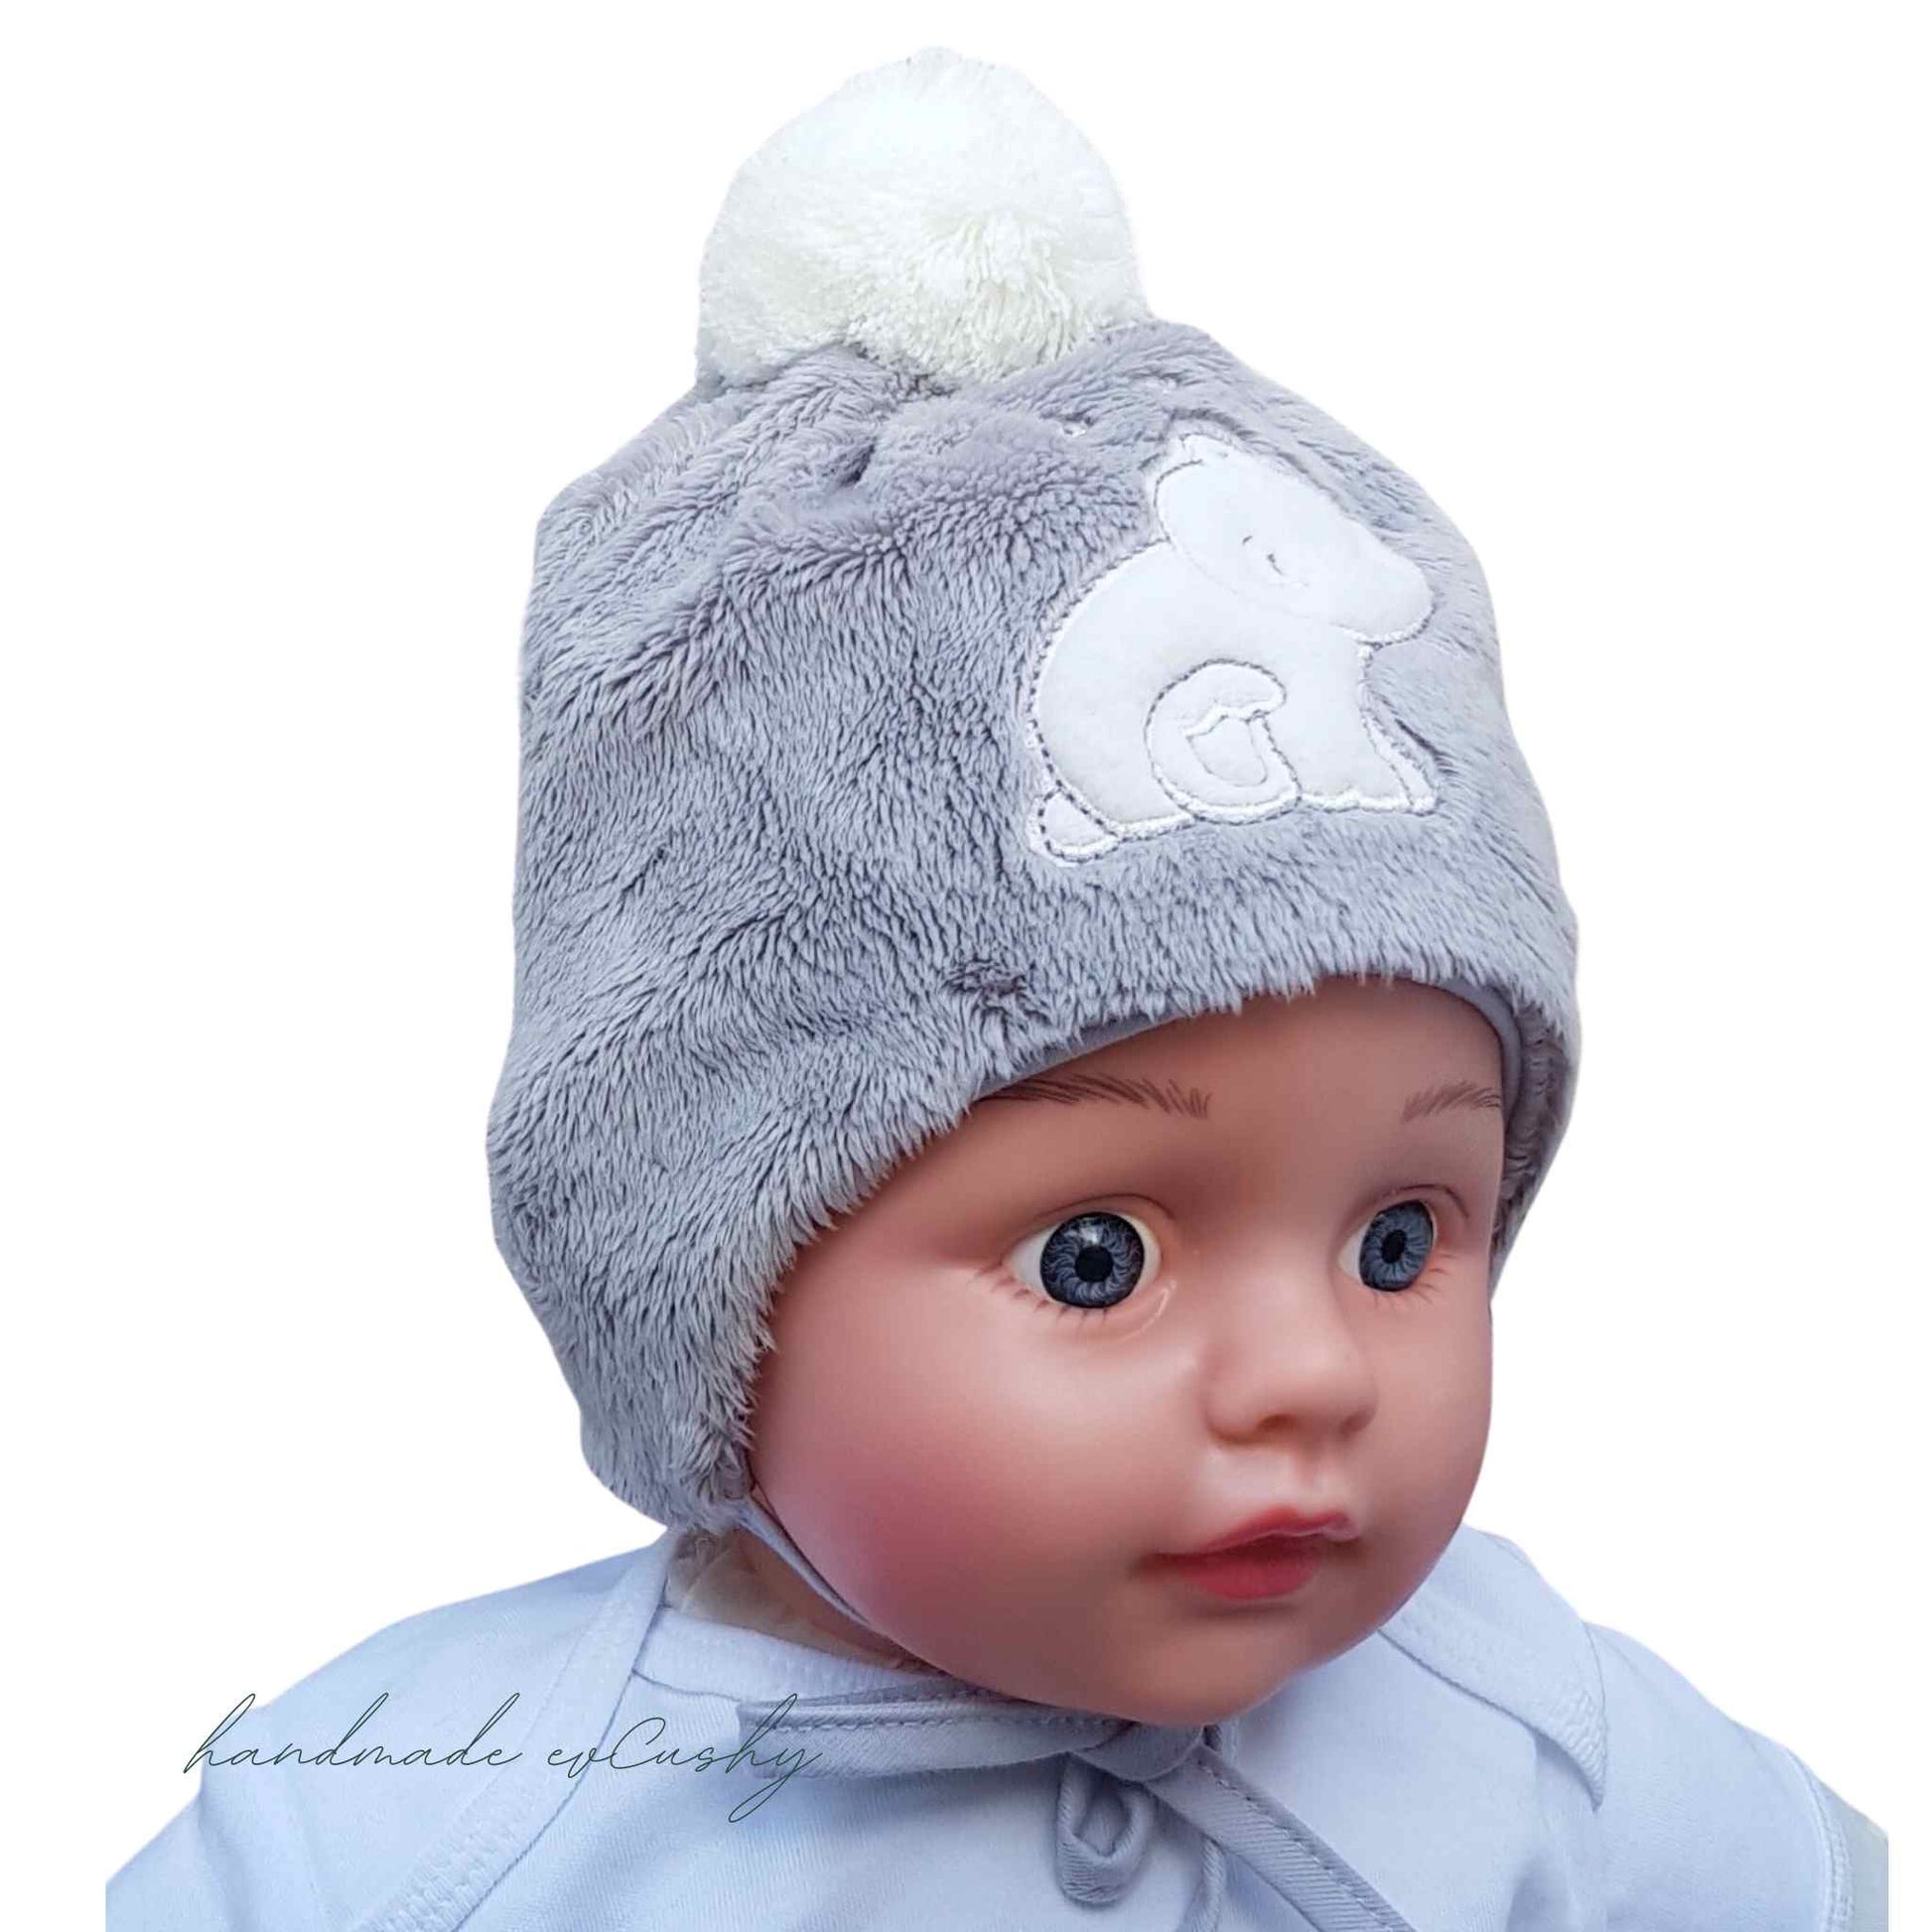 hat for winter for baby warm hat fleece hat with pom-pom grey hat with white pom-pom evCushy